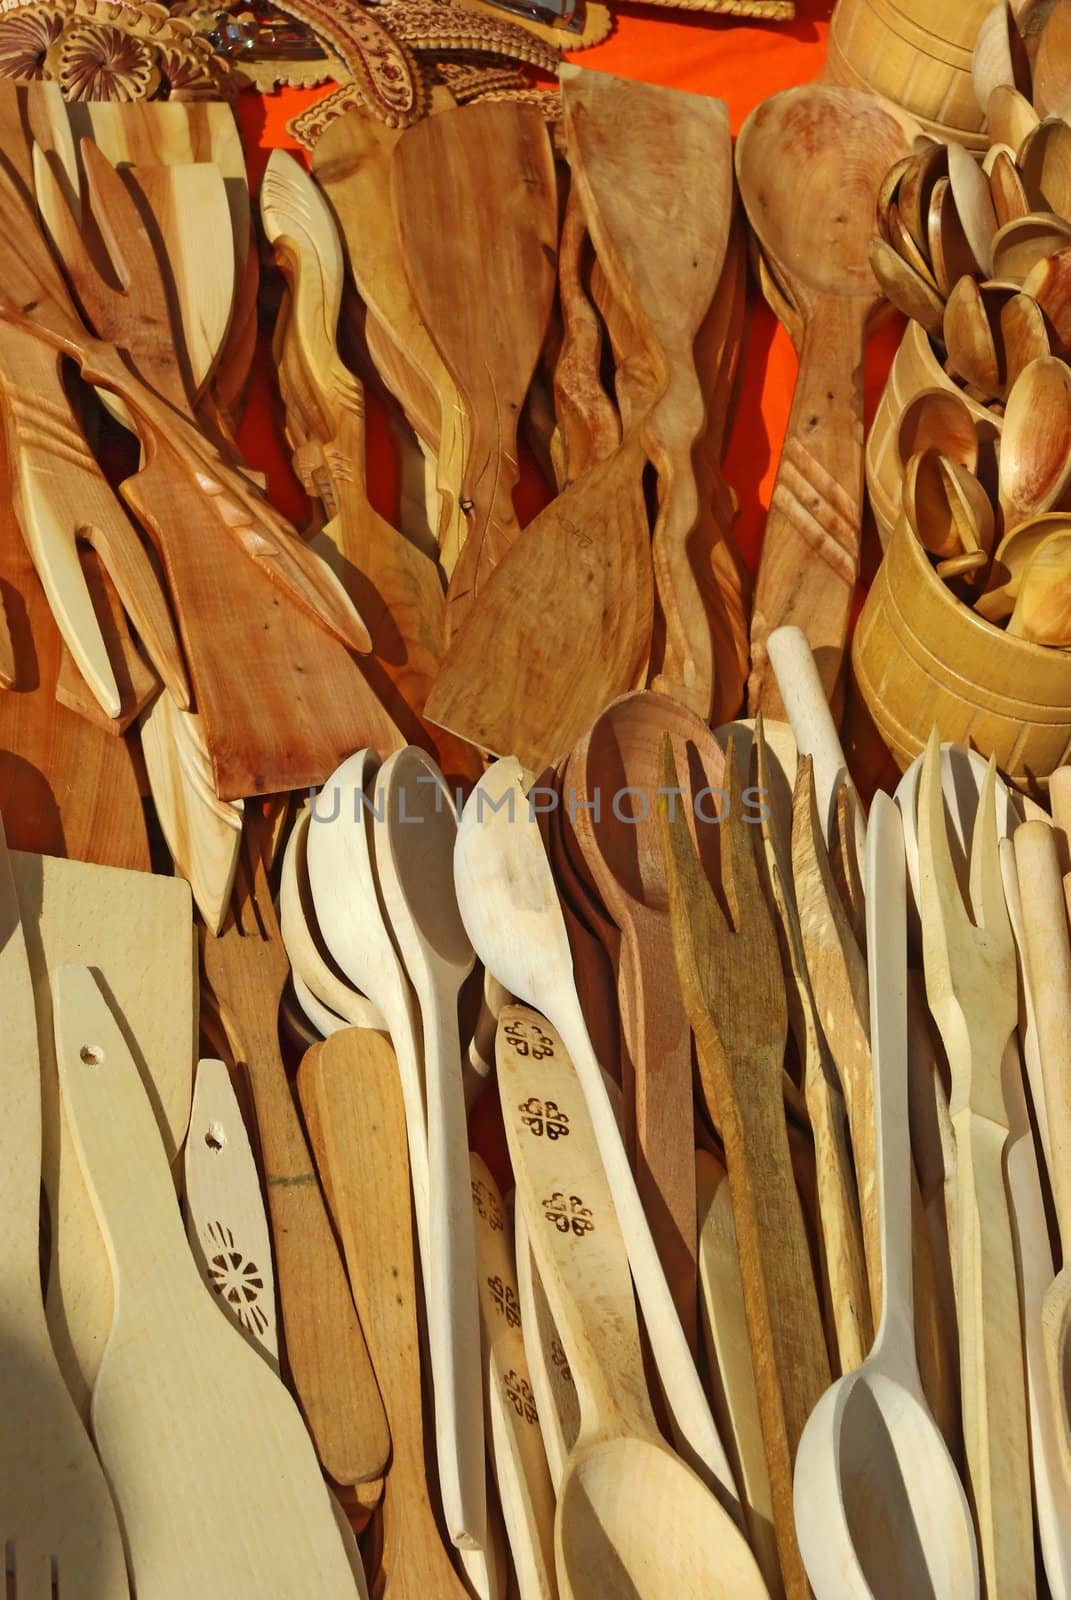 Wooden kitchen utensils by Vitamin